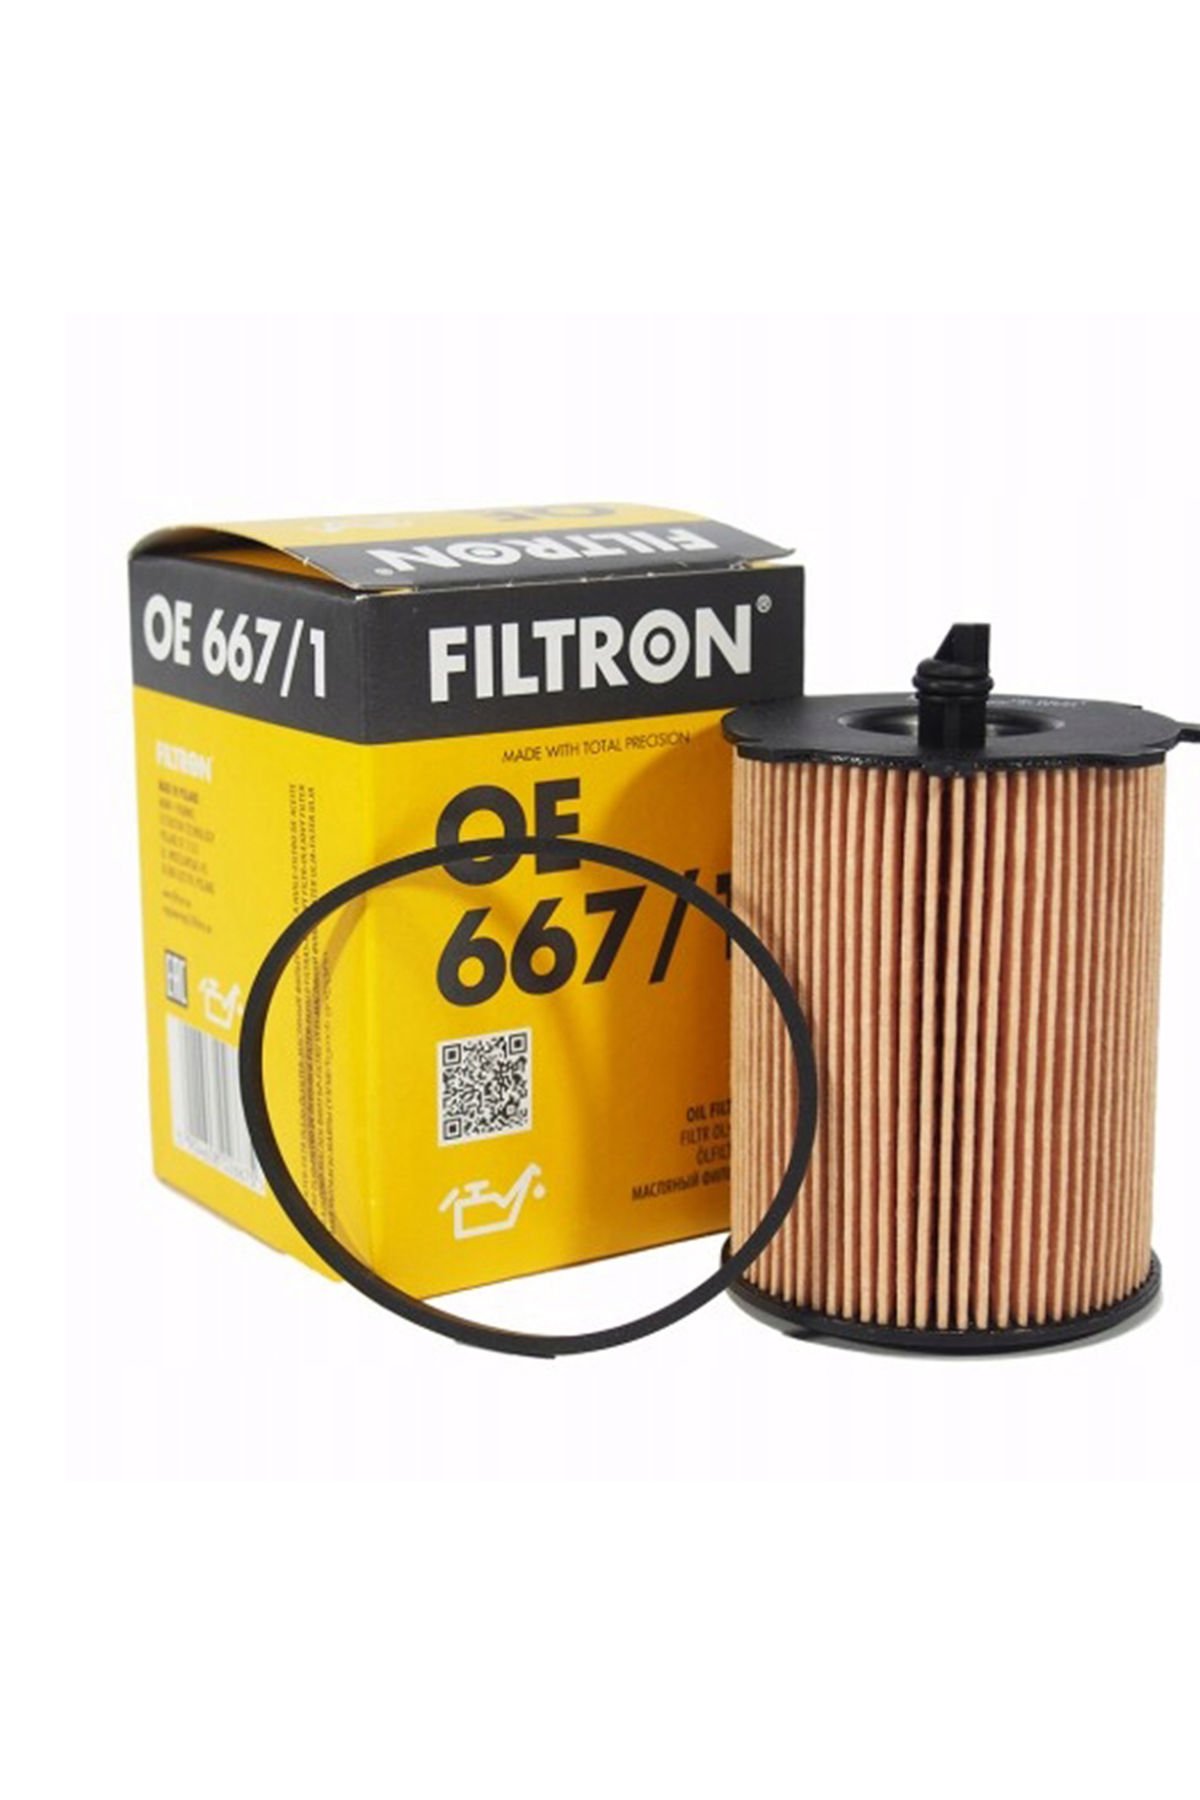 Citroen C2 1.4 HDI Dizel Yağ Filtresi 2004-2008 Filtron